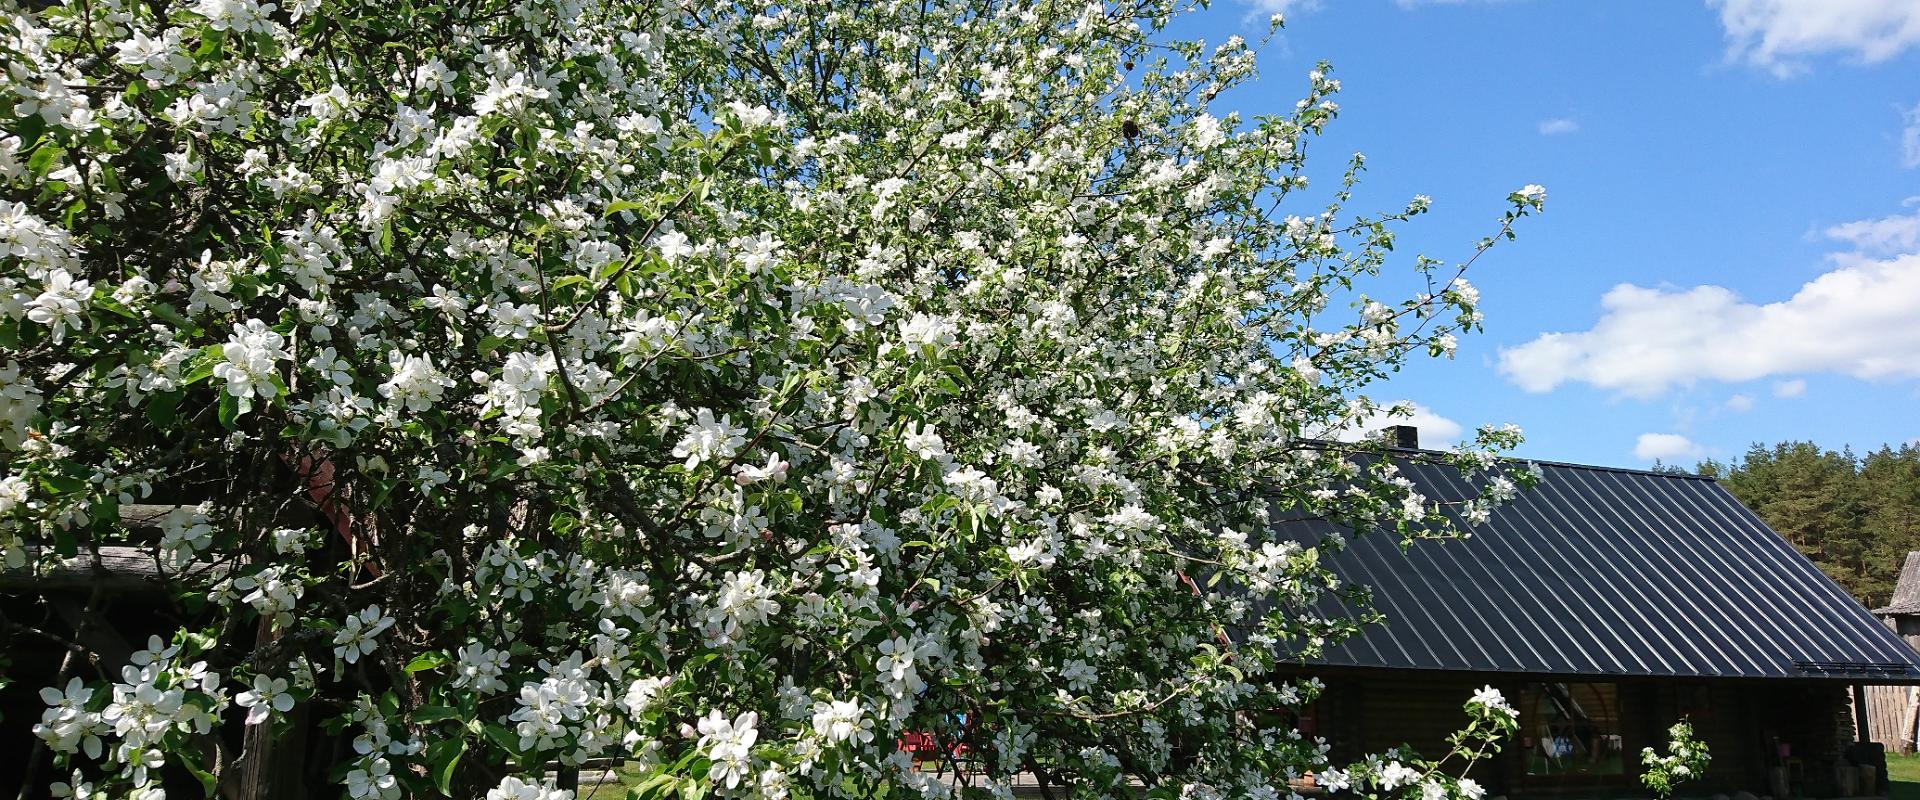 Marknatalu Ferienhaus Saunahaus- niedliche kleine Blockhütte, neben der ein wunderschöner Apfelbaum in voller Blüte steht.